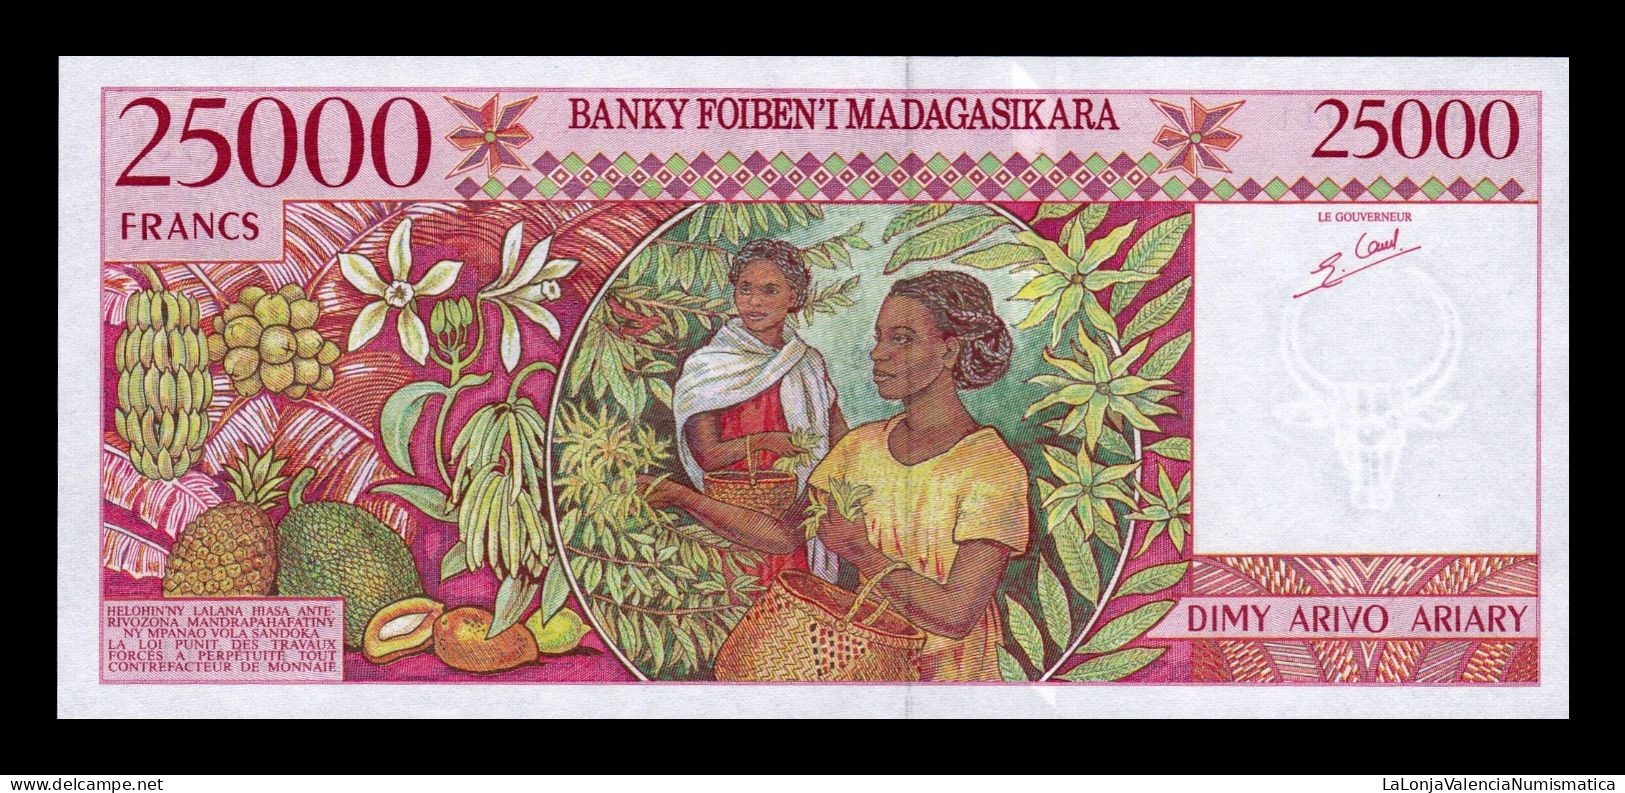 Madagascar 25000 Francs ND (1998) Pick 82 Sc Unc - Madagaskar